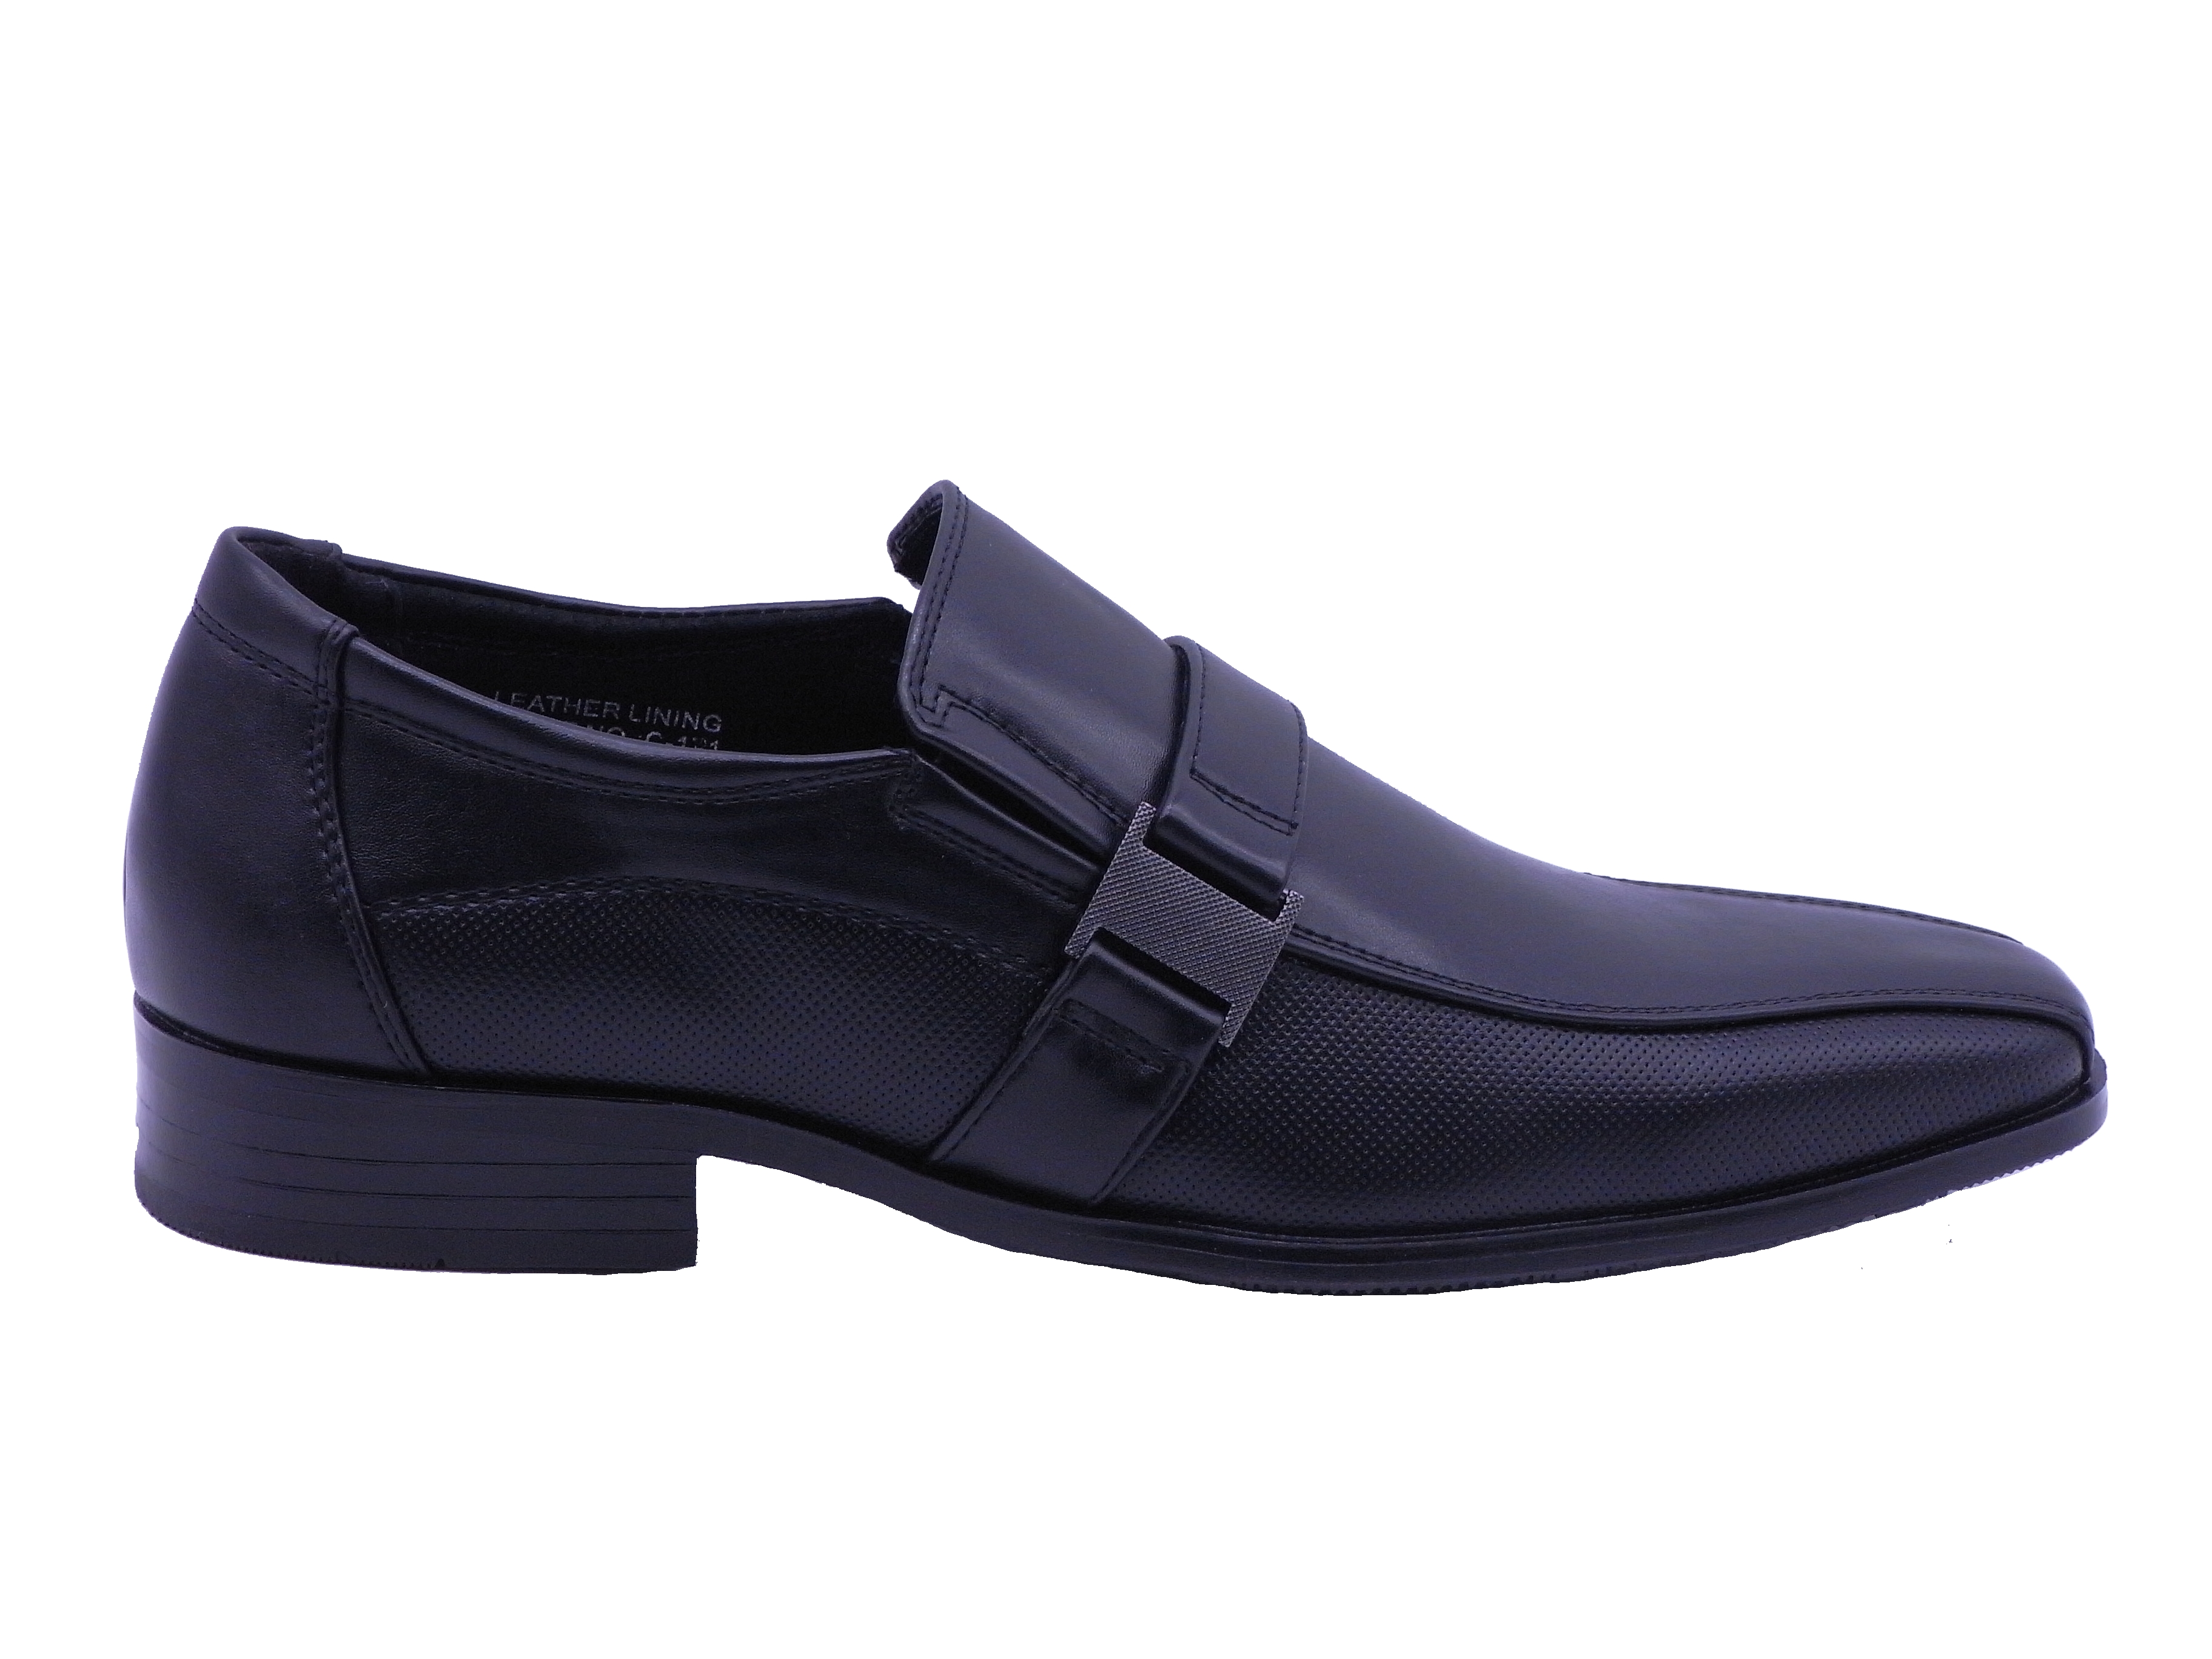 Men Shoes Slip On Strap Loafer Black Color Size US8.5 - image 2 of 5